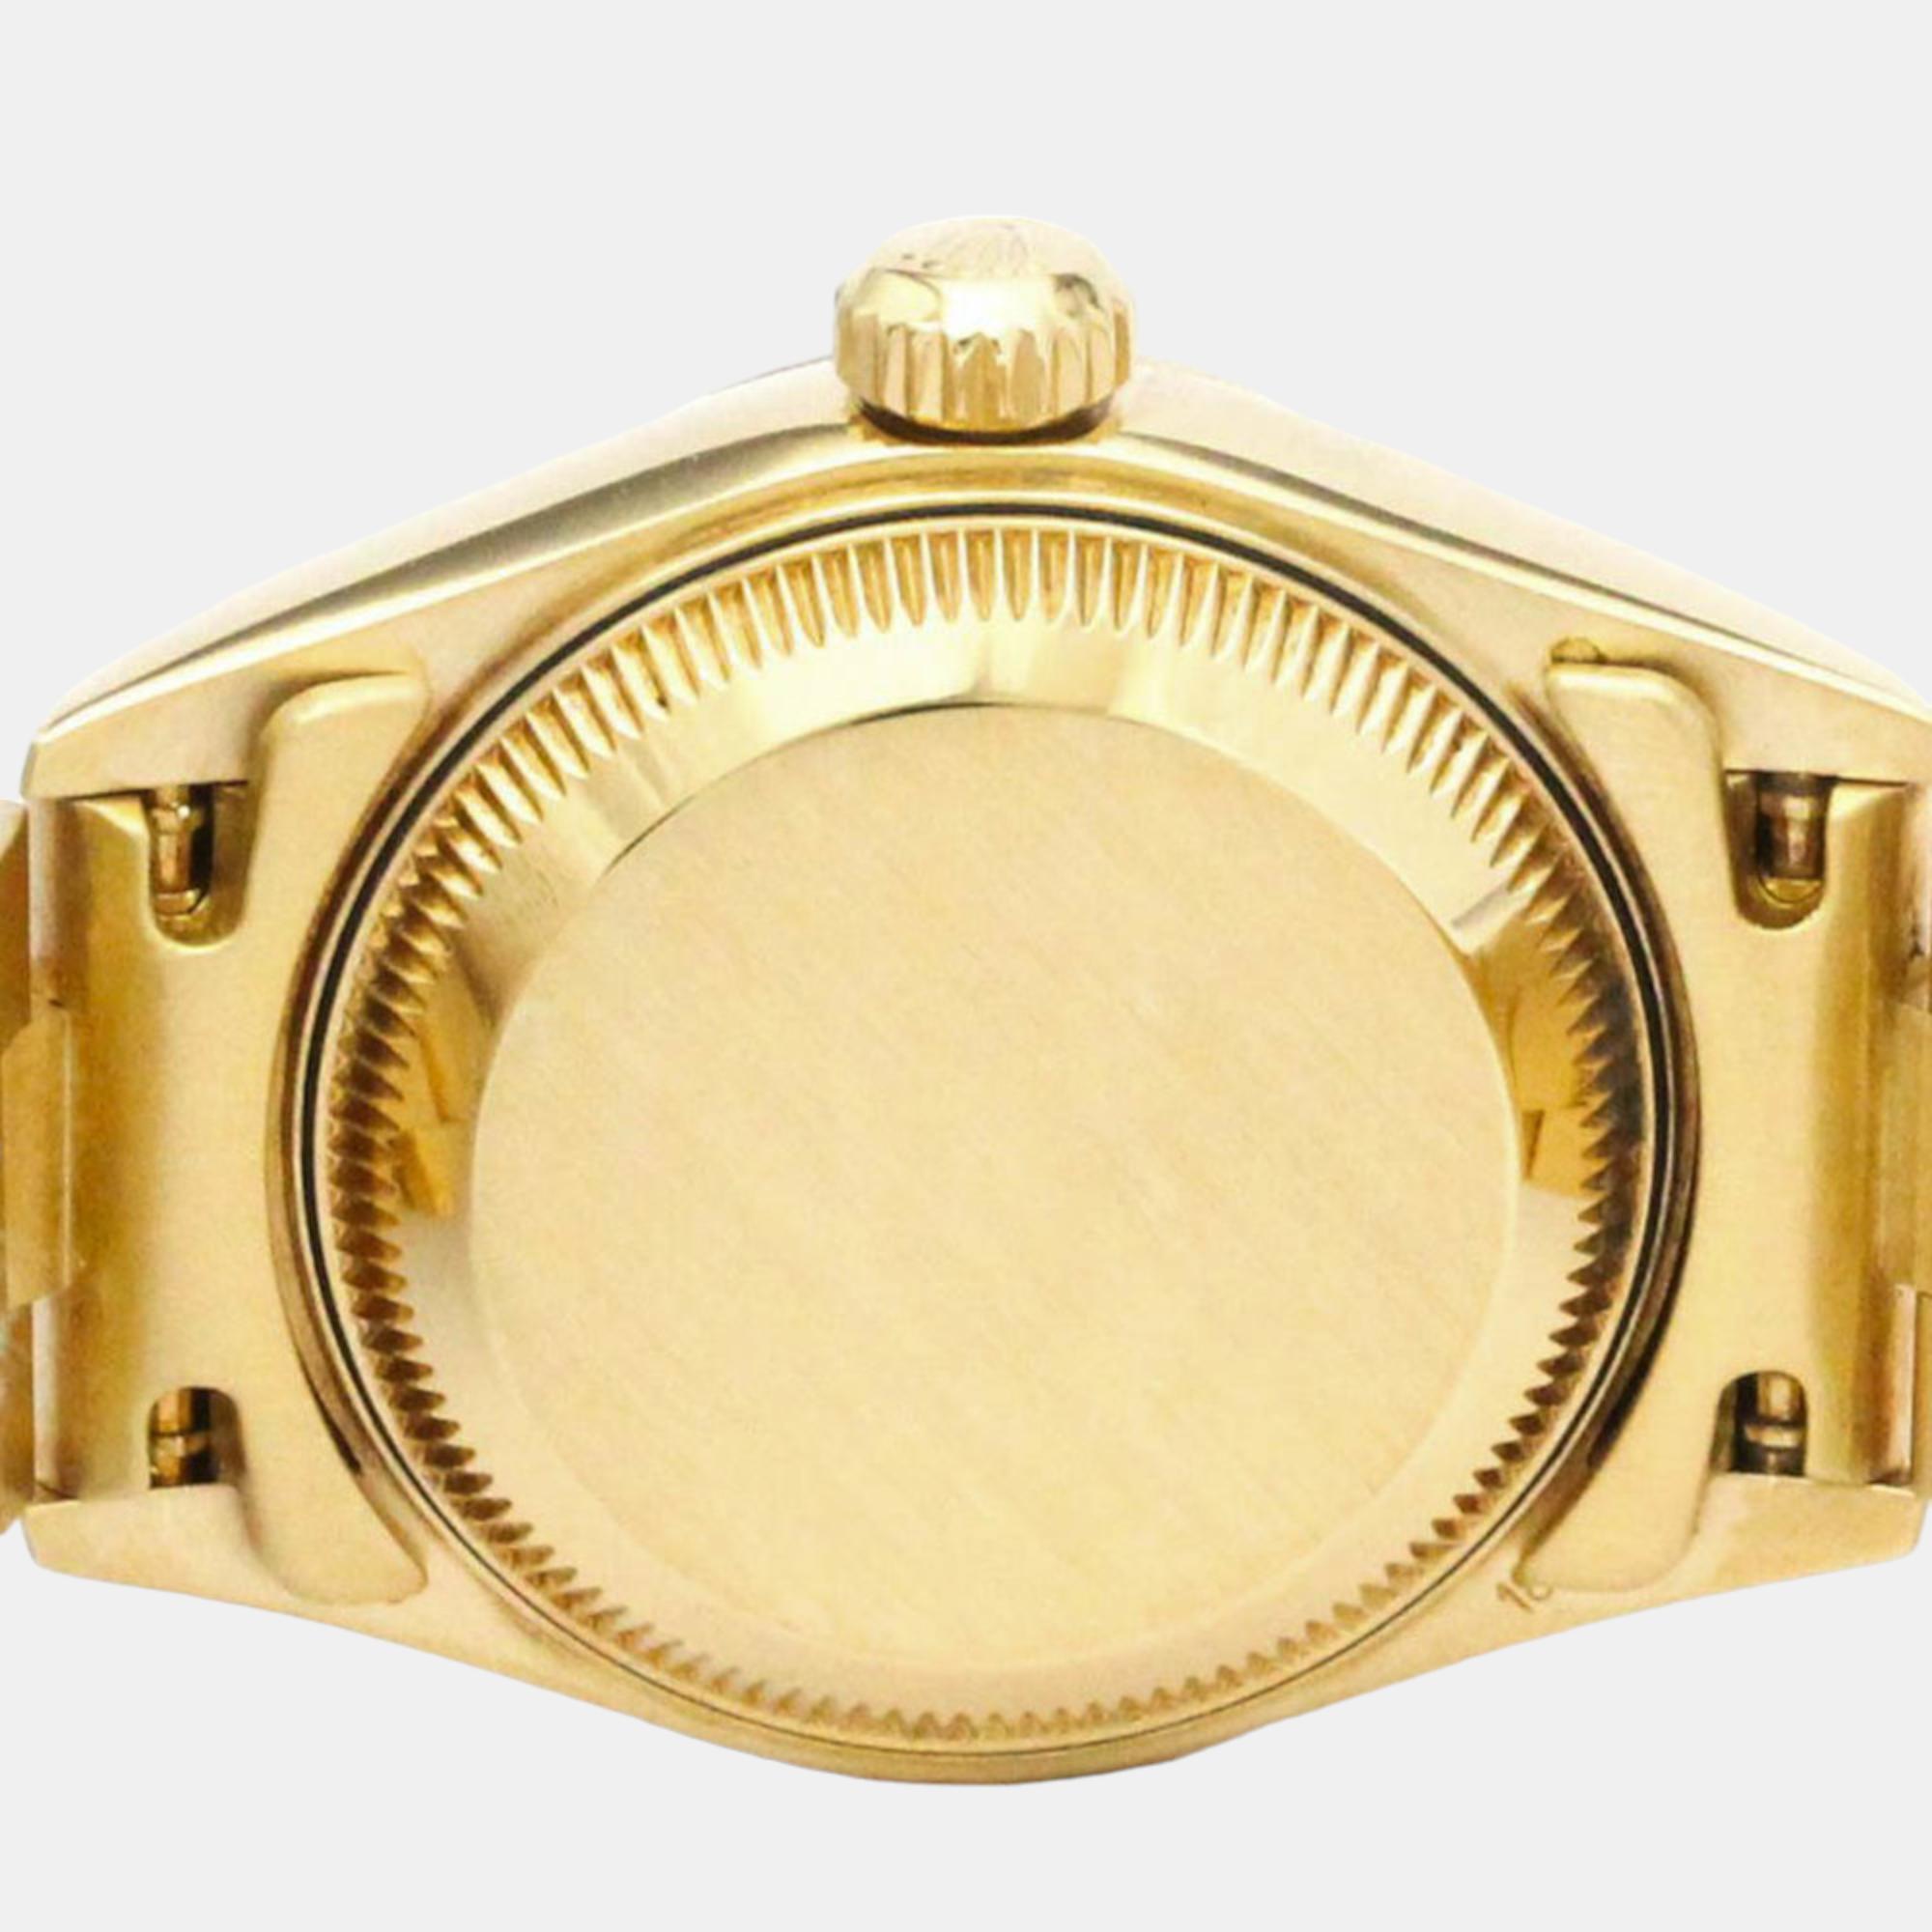 Rolex Champagne Diamond 18k Yellow Gold Datejust 79178 Automatic Women's Wristwatch 26 Mm